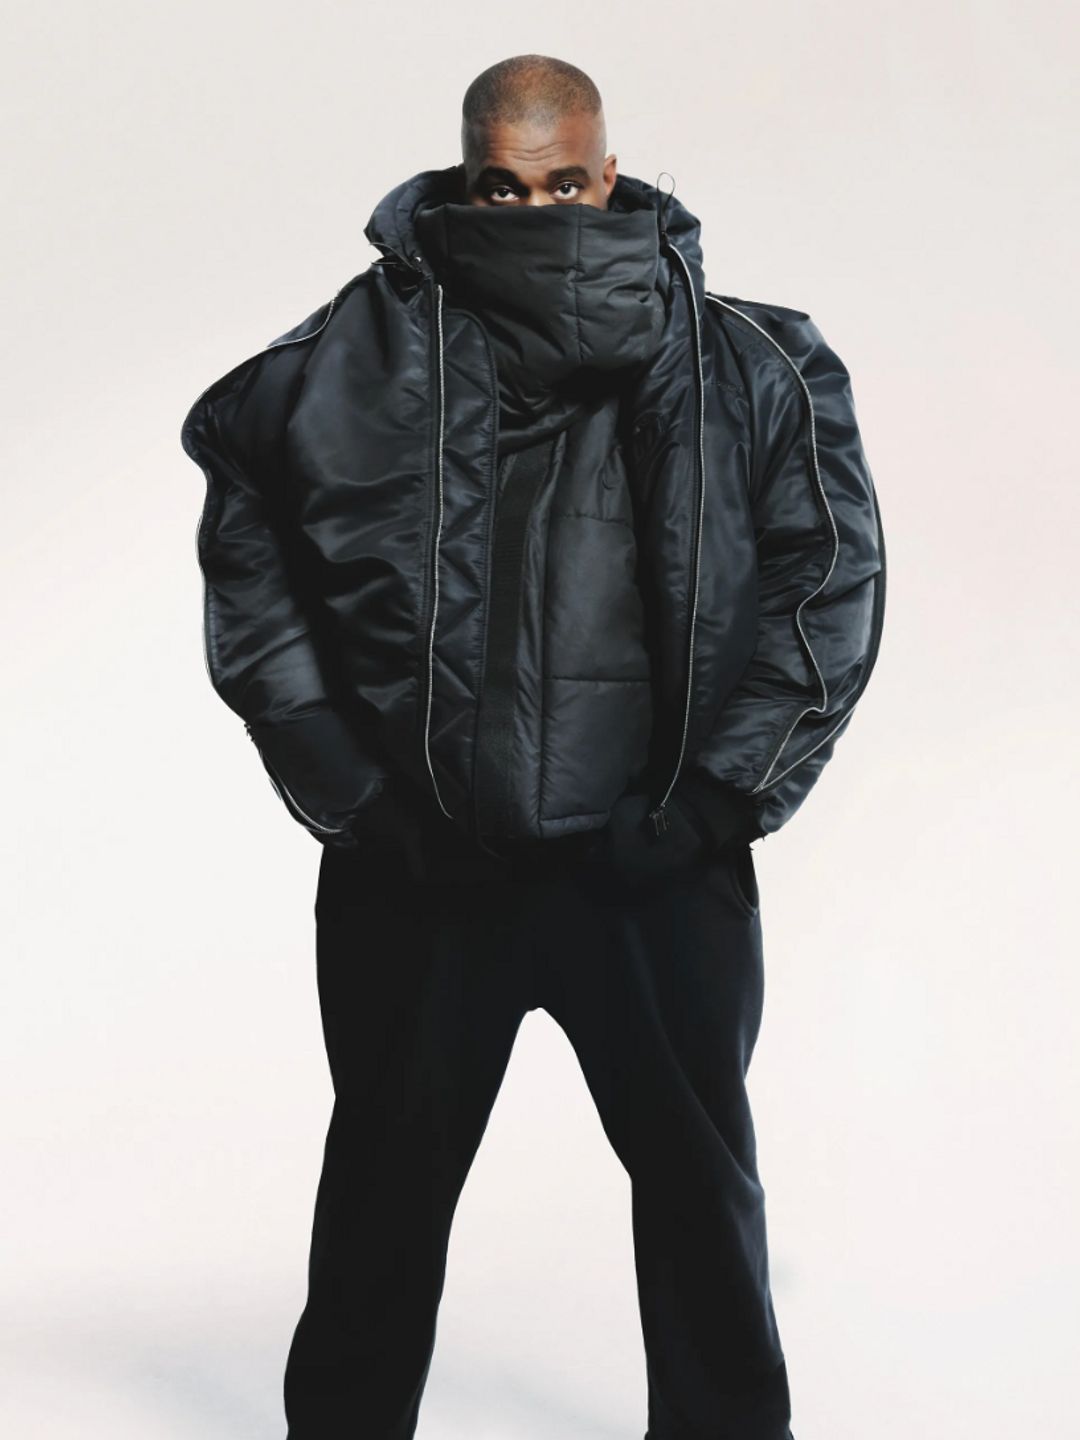 Ye ( Kanye West) wears an oversized black jacket in look 27 of the Y/Projectlookbook